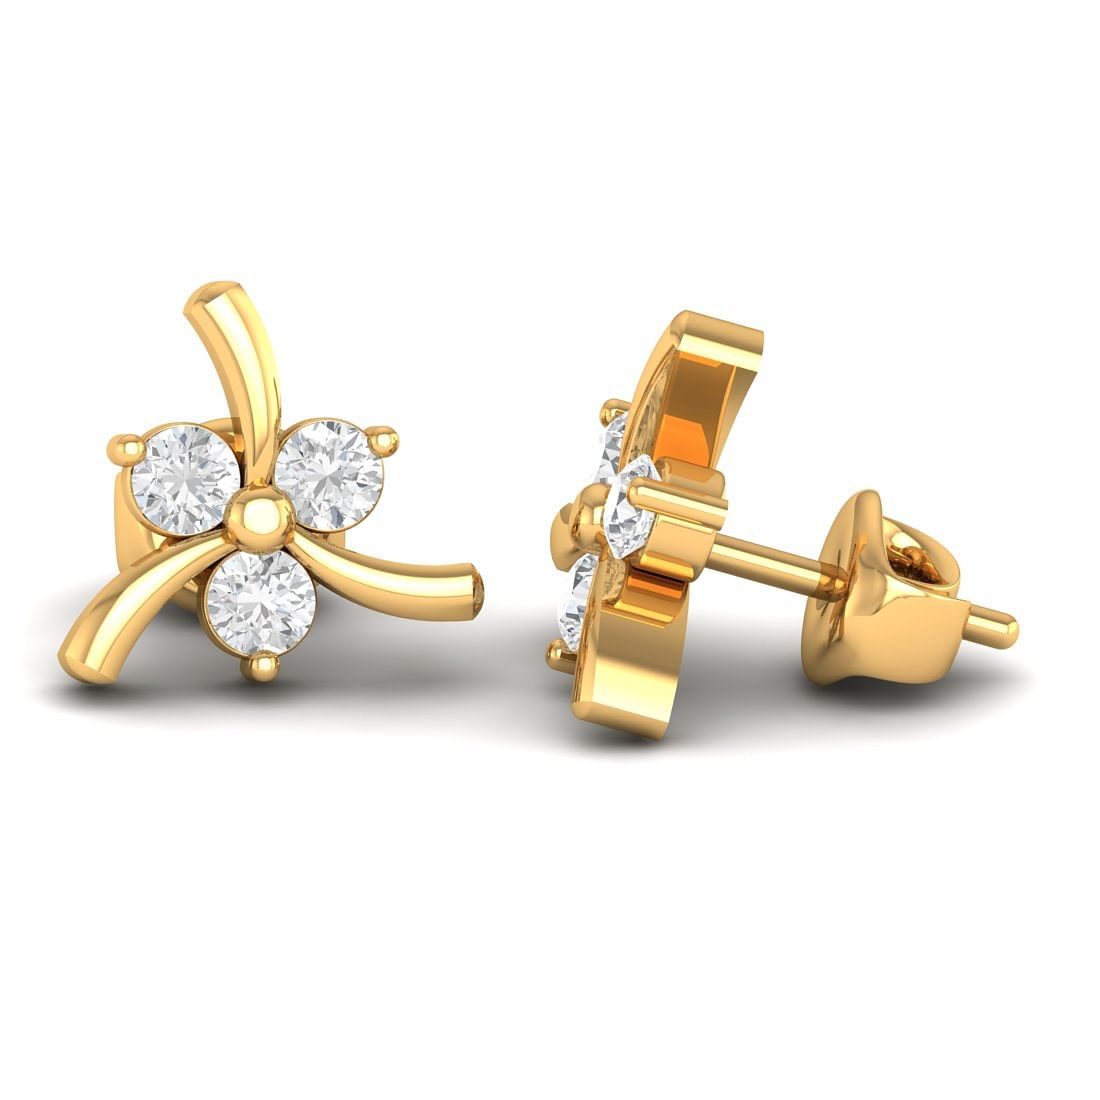 14k Yellow Gold Pari Fancy Diamond Stud Earrings for daily wear